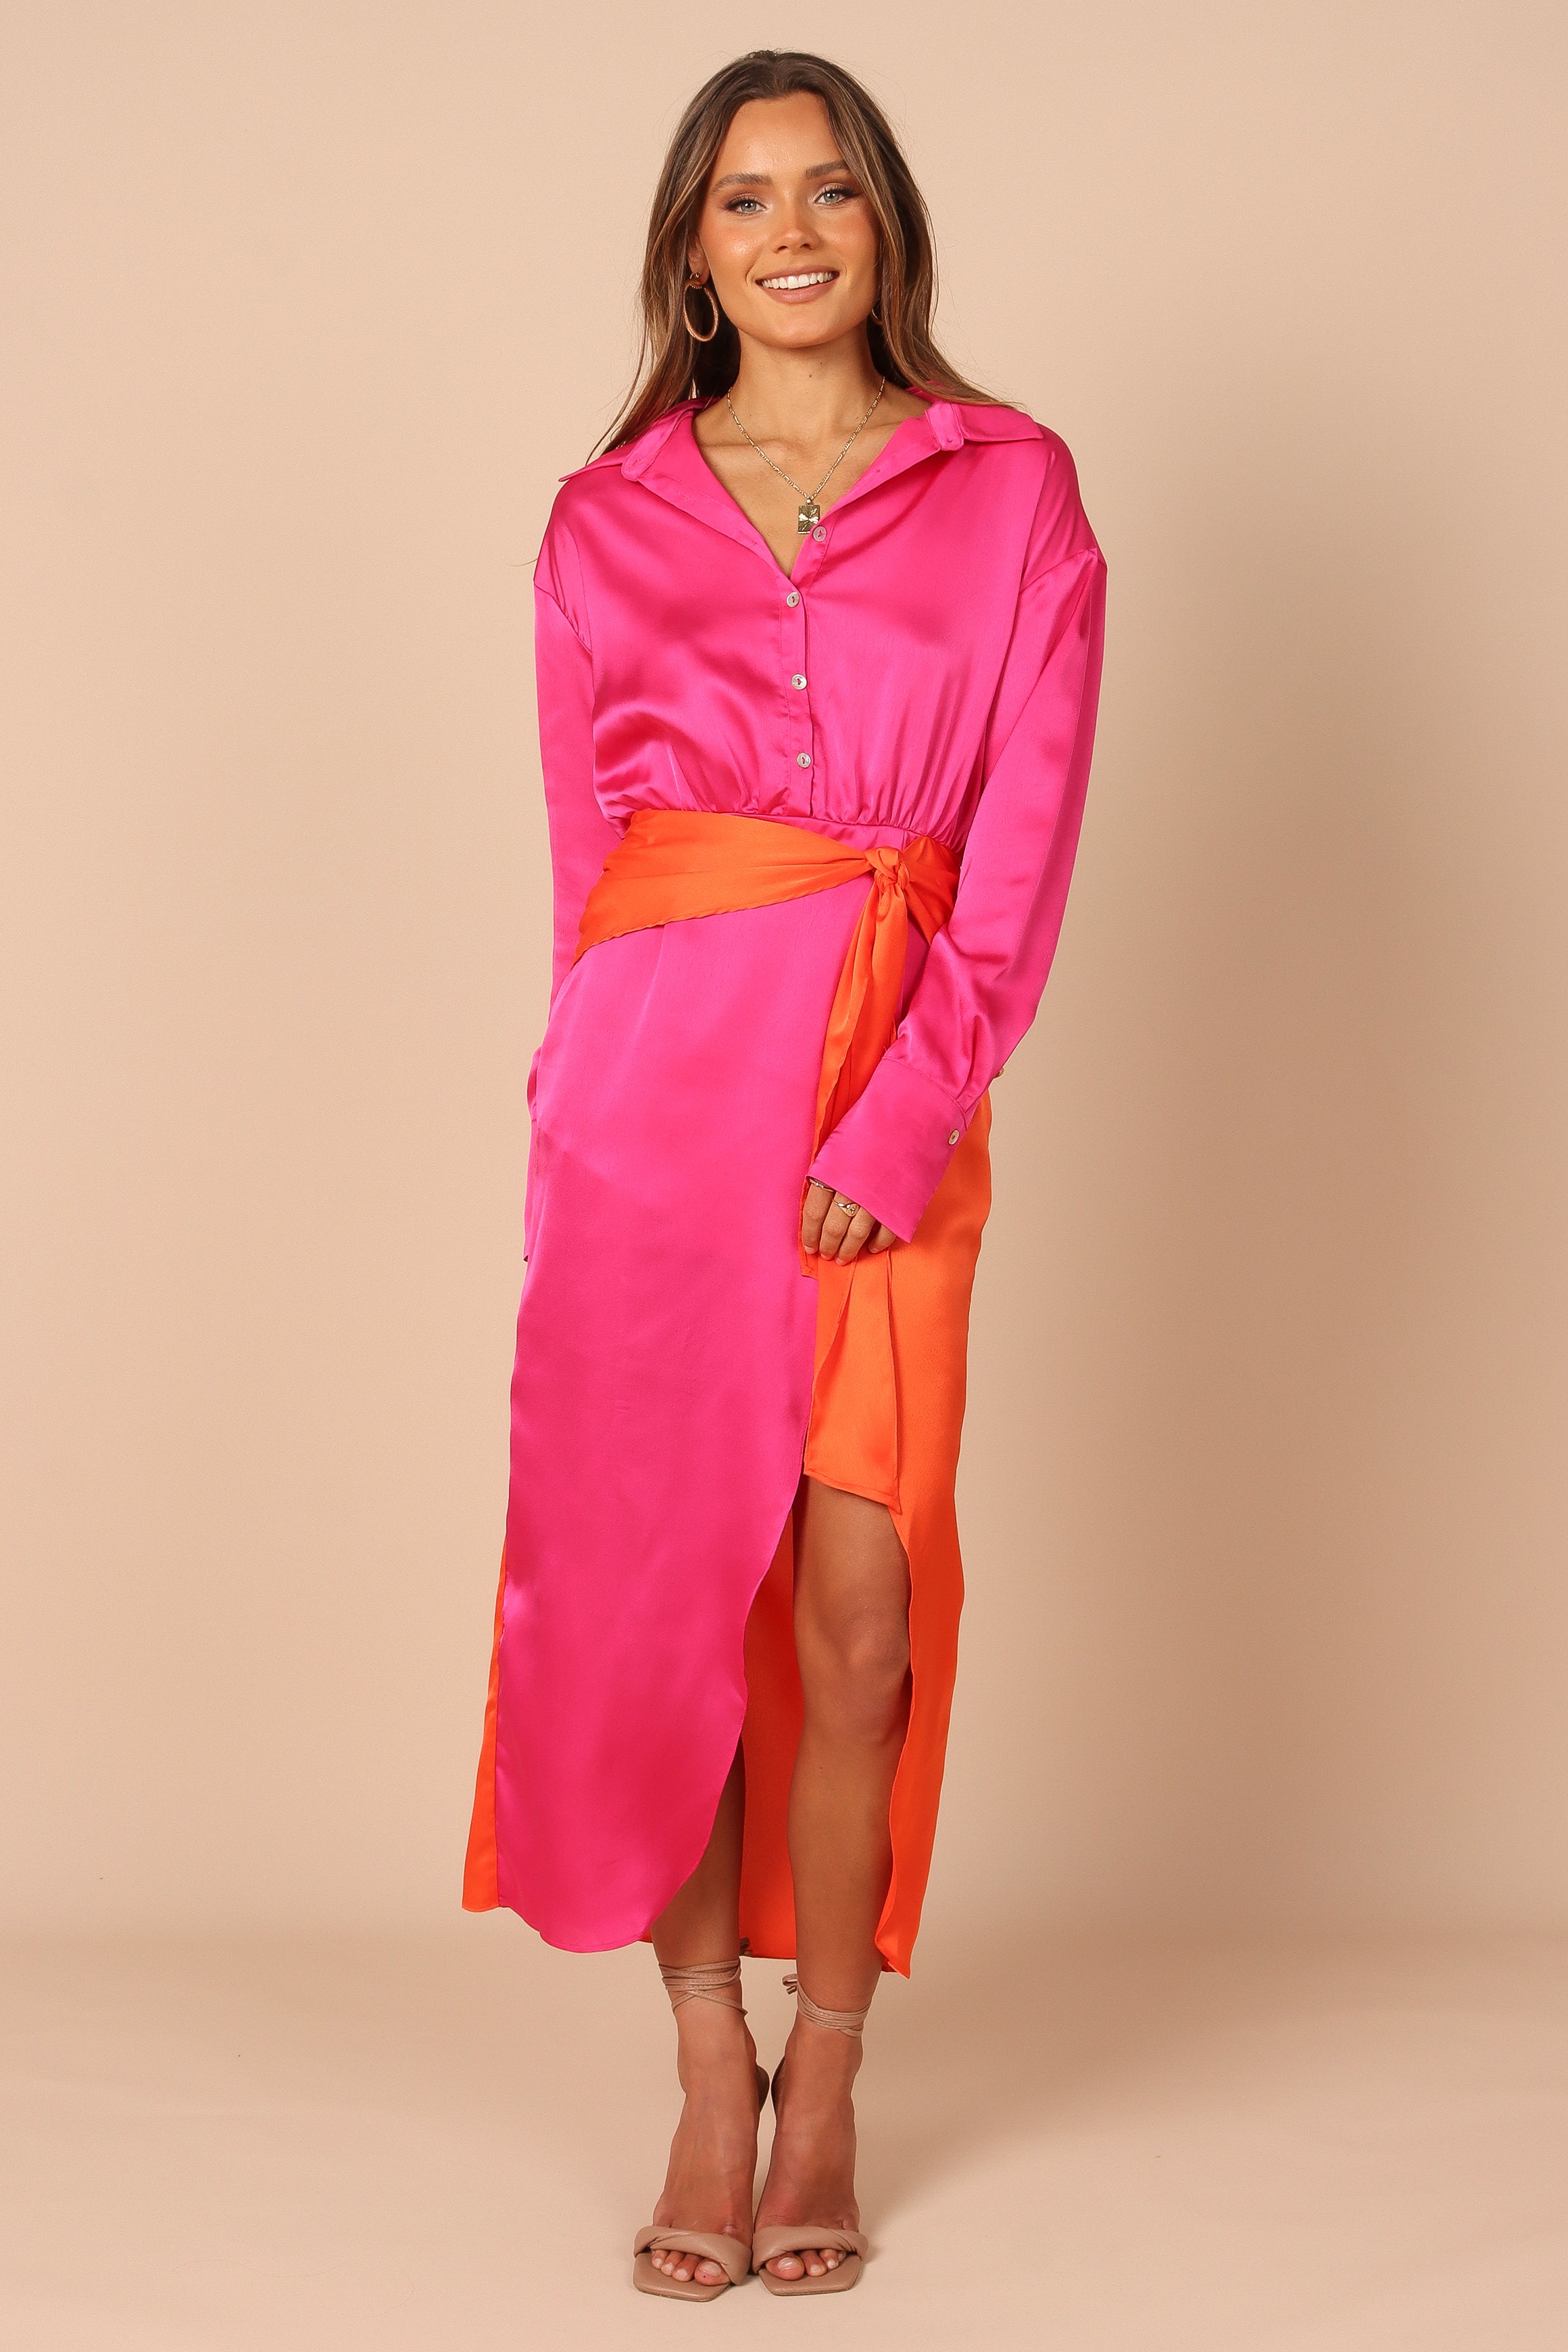 Pink/Orange Collared Color Blocking Dress